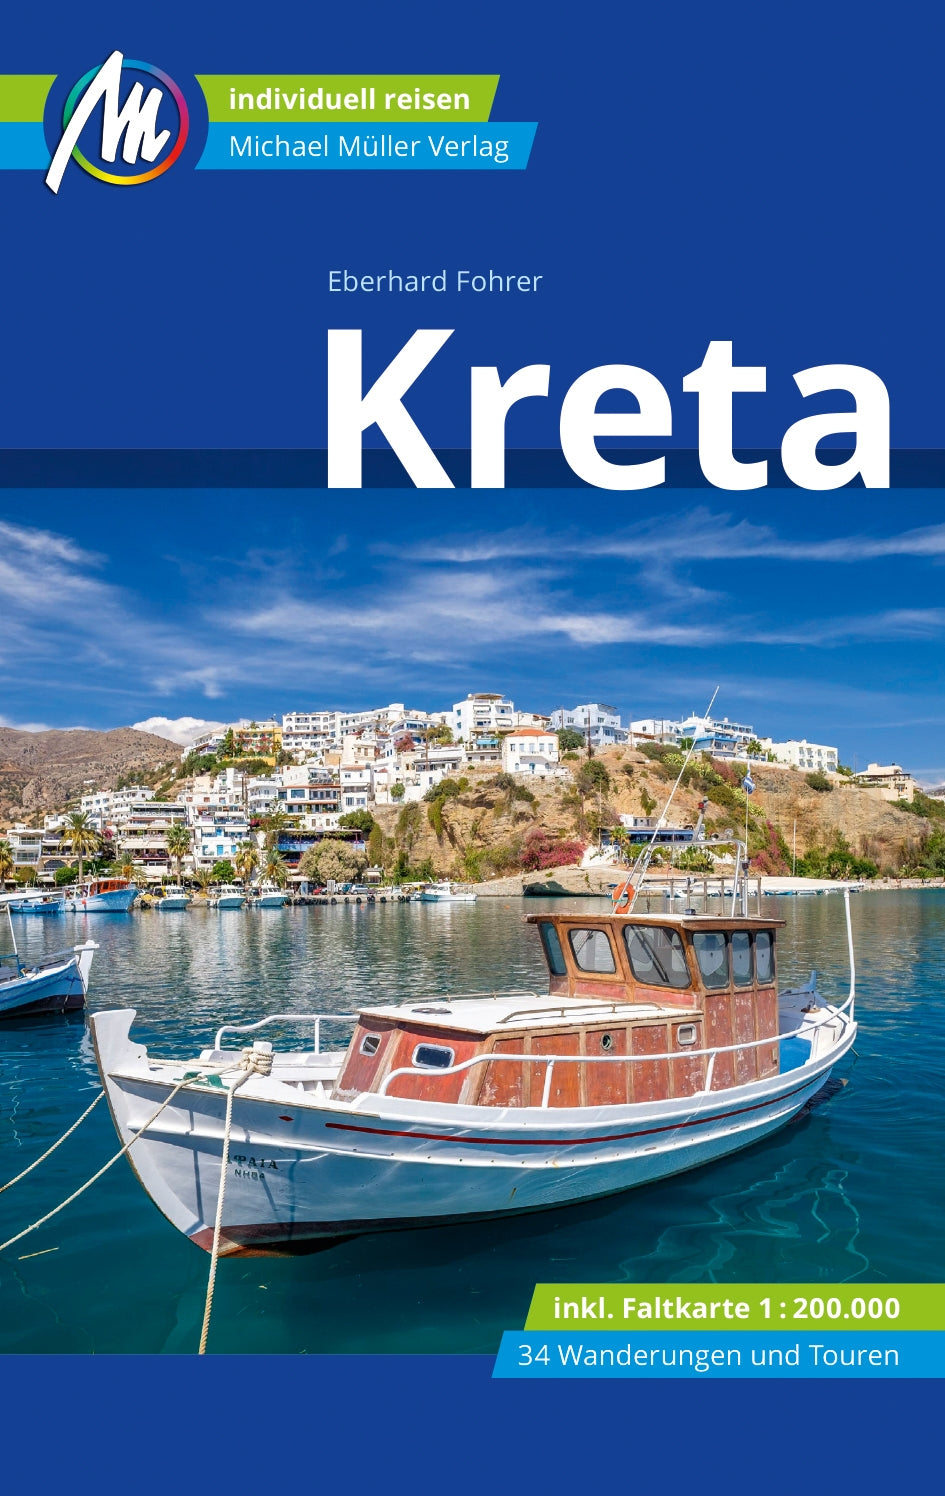 Travel guide to Crete